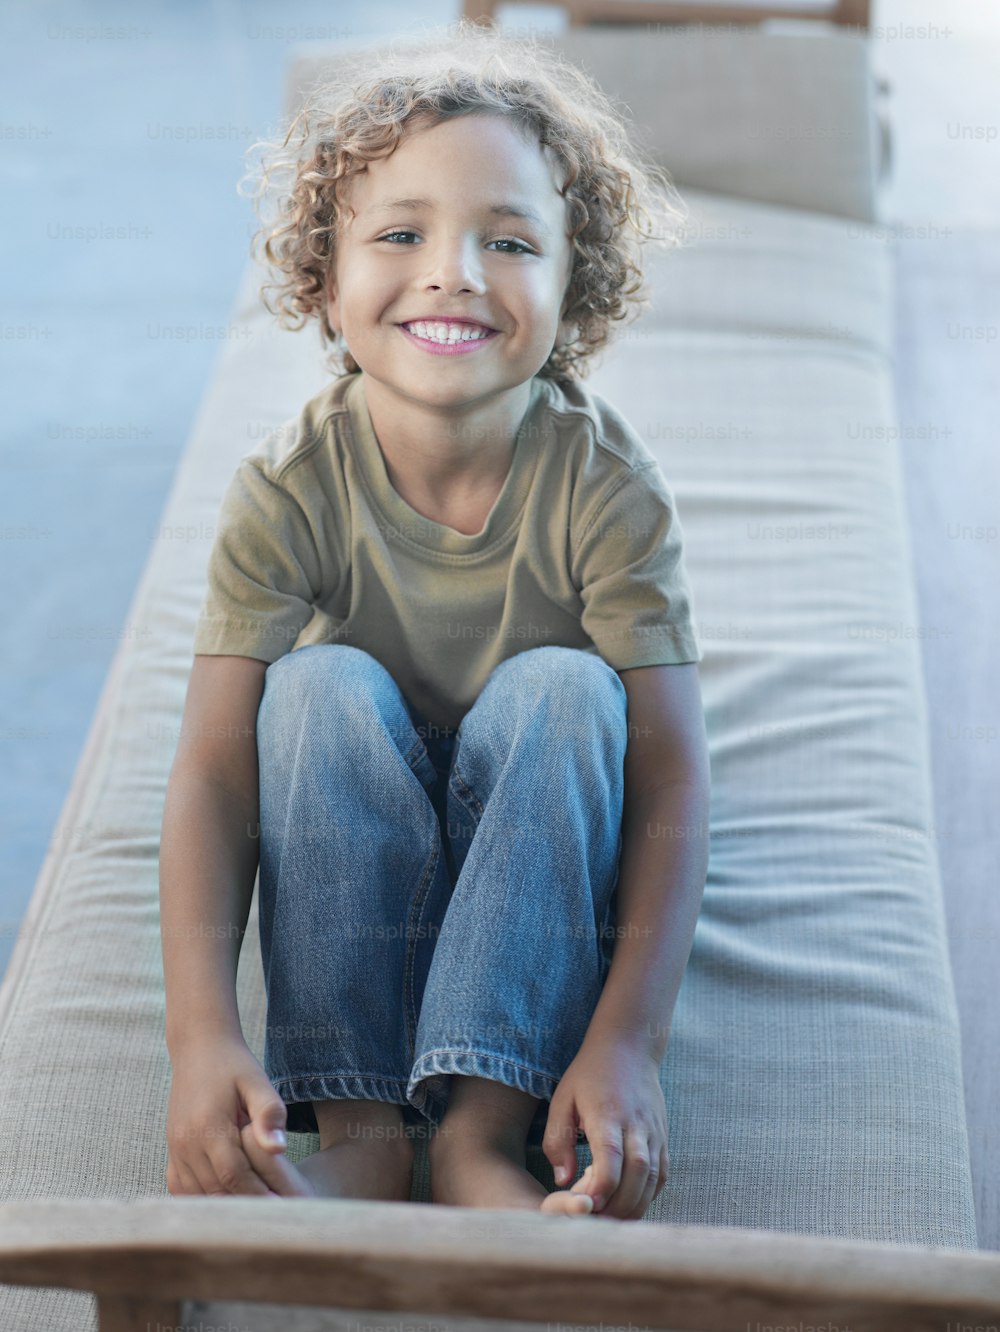 Un niño pequeño sentado en un sofá sonriendo